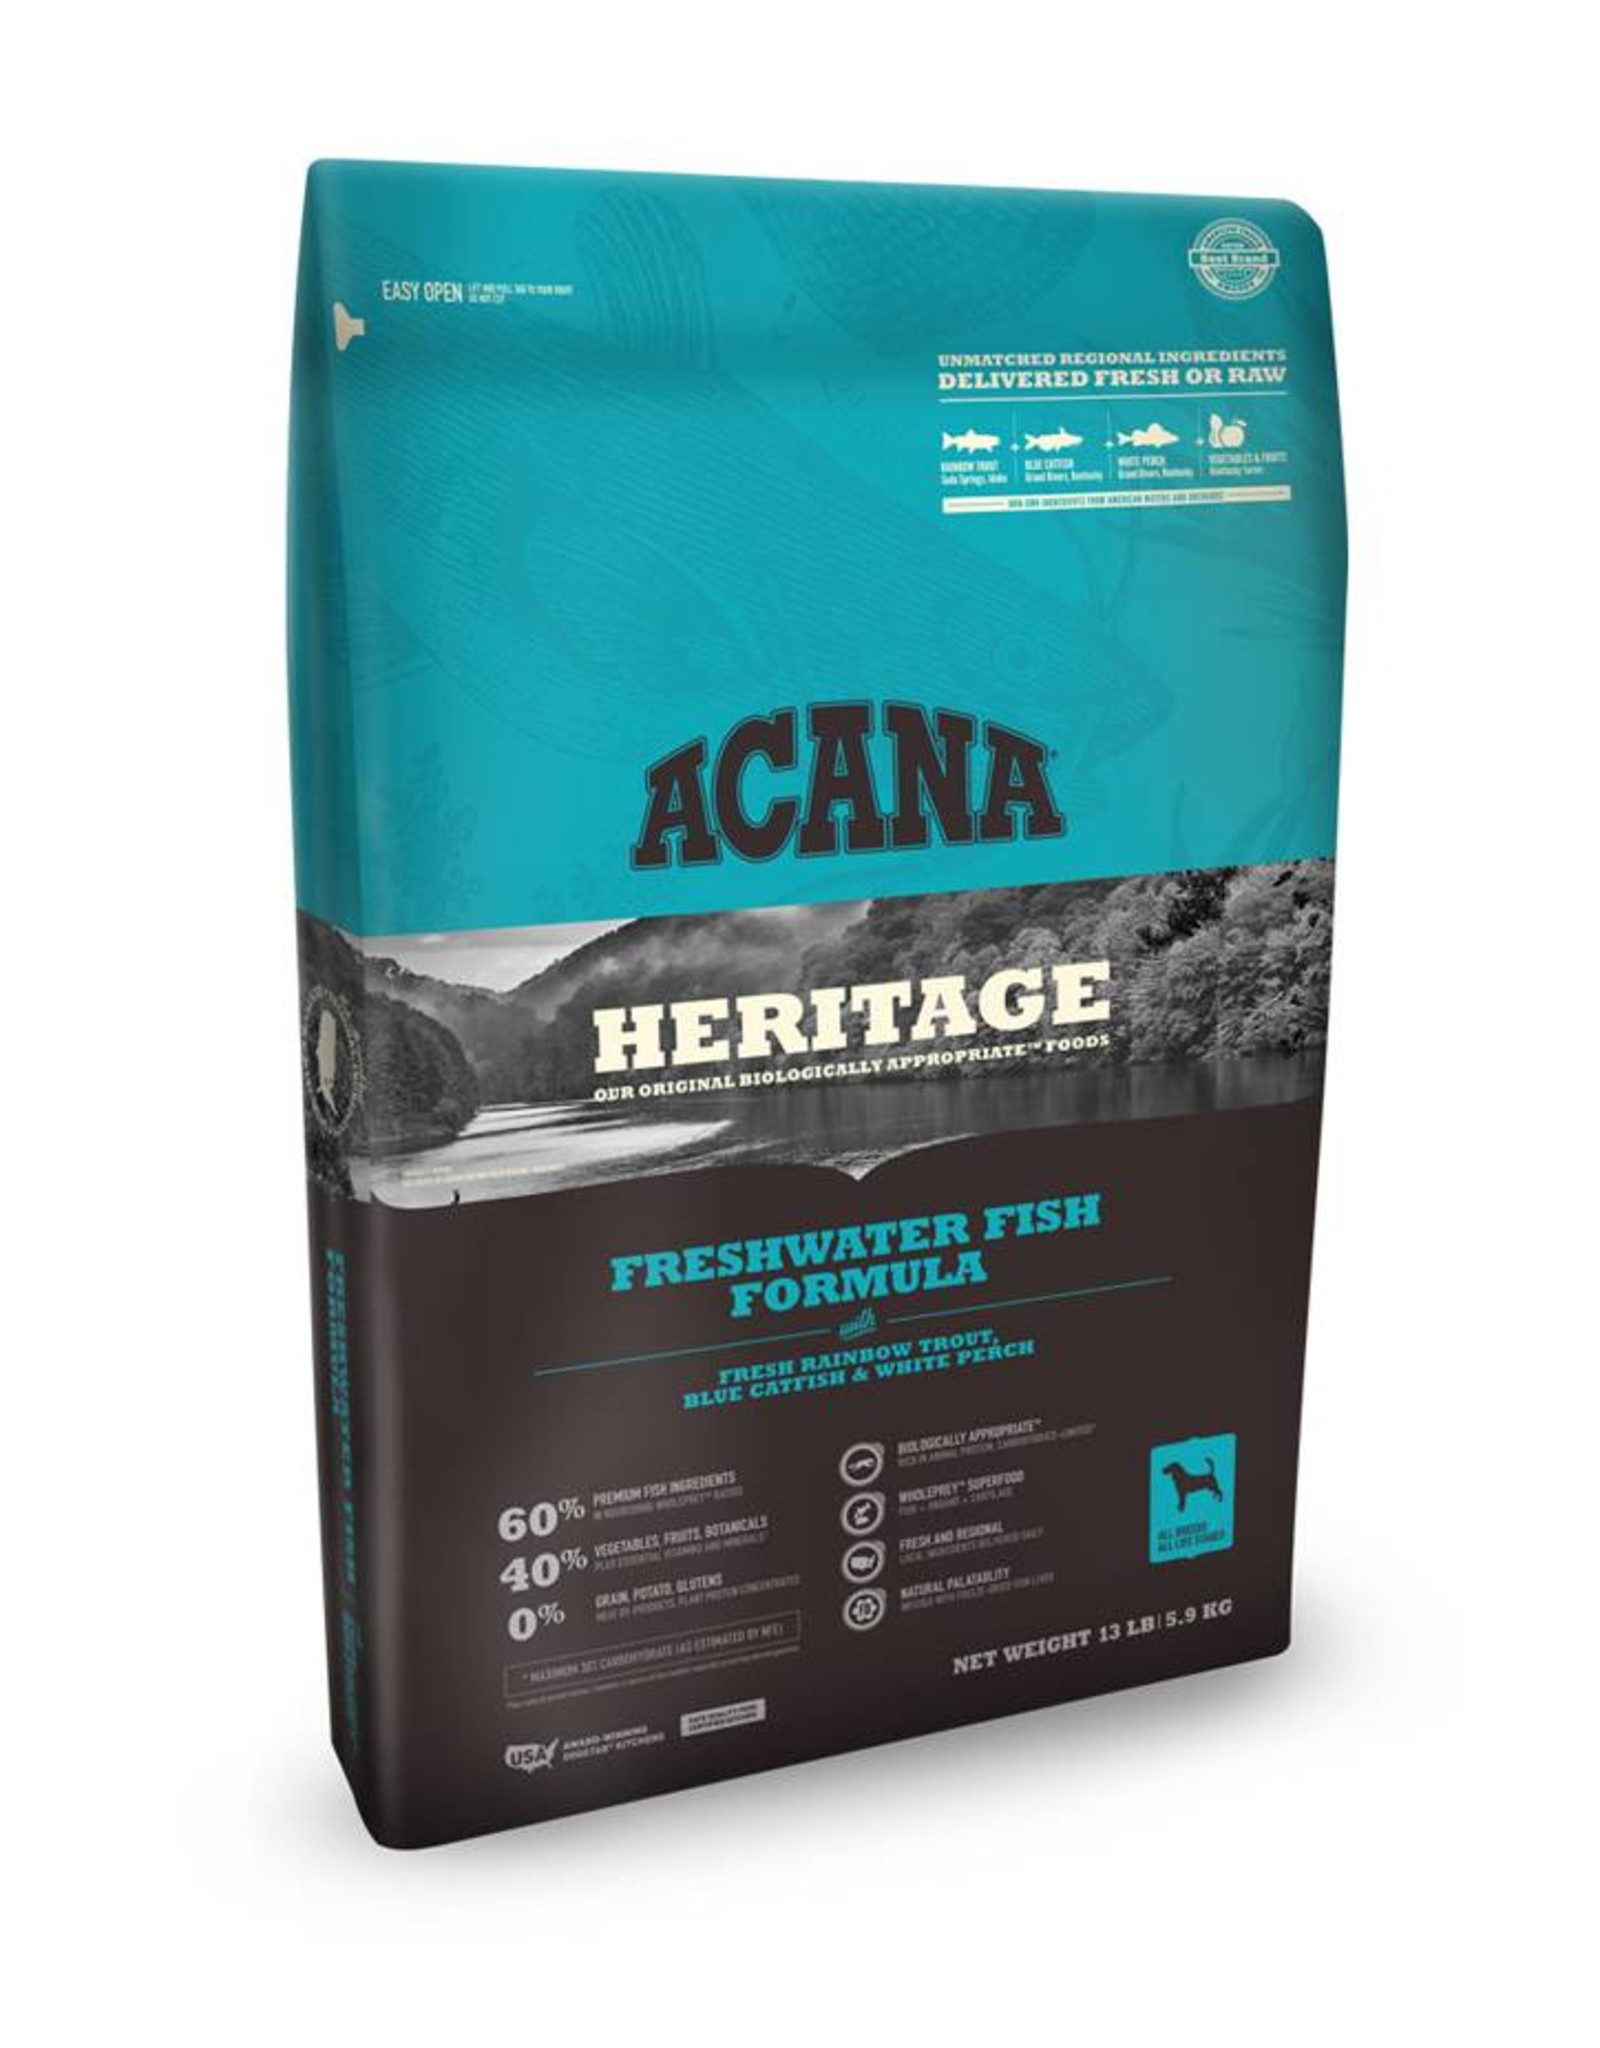 ACANA Acana Heritage | Freshwater Fish Dog Formula